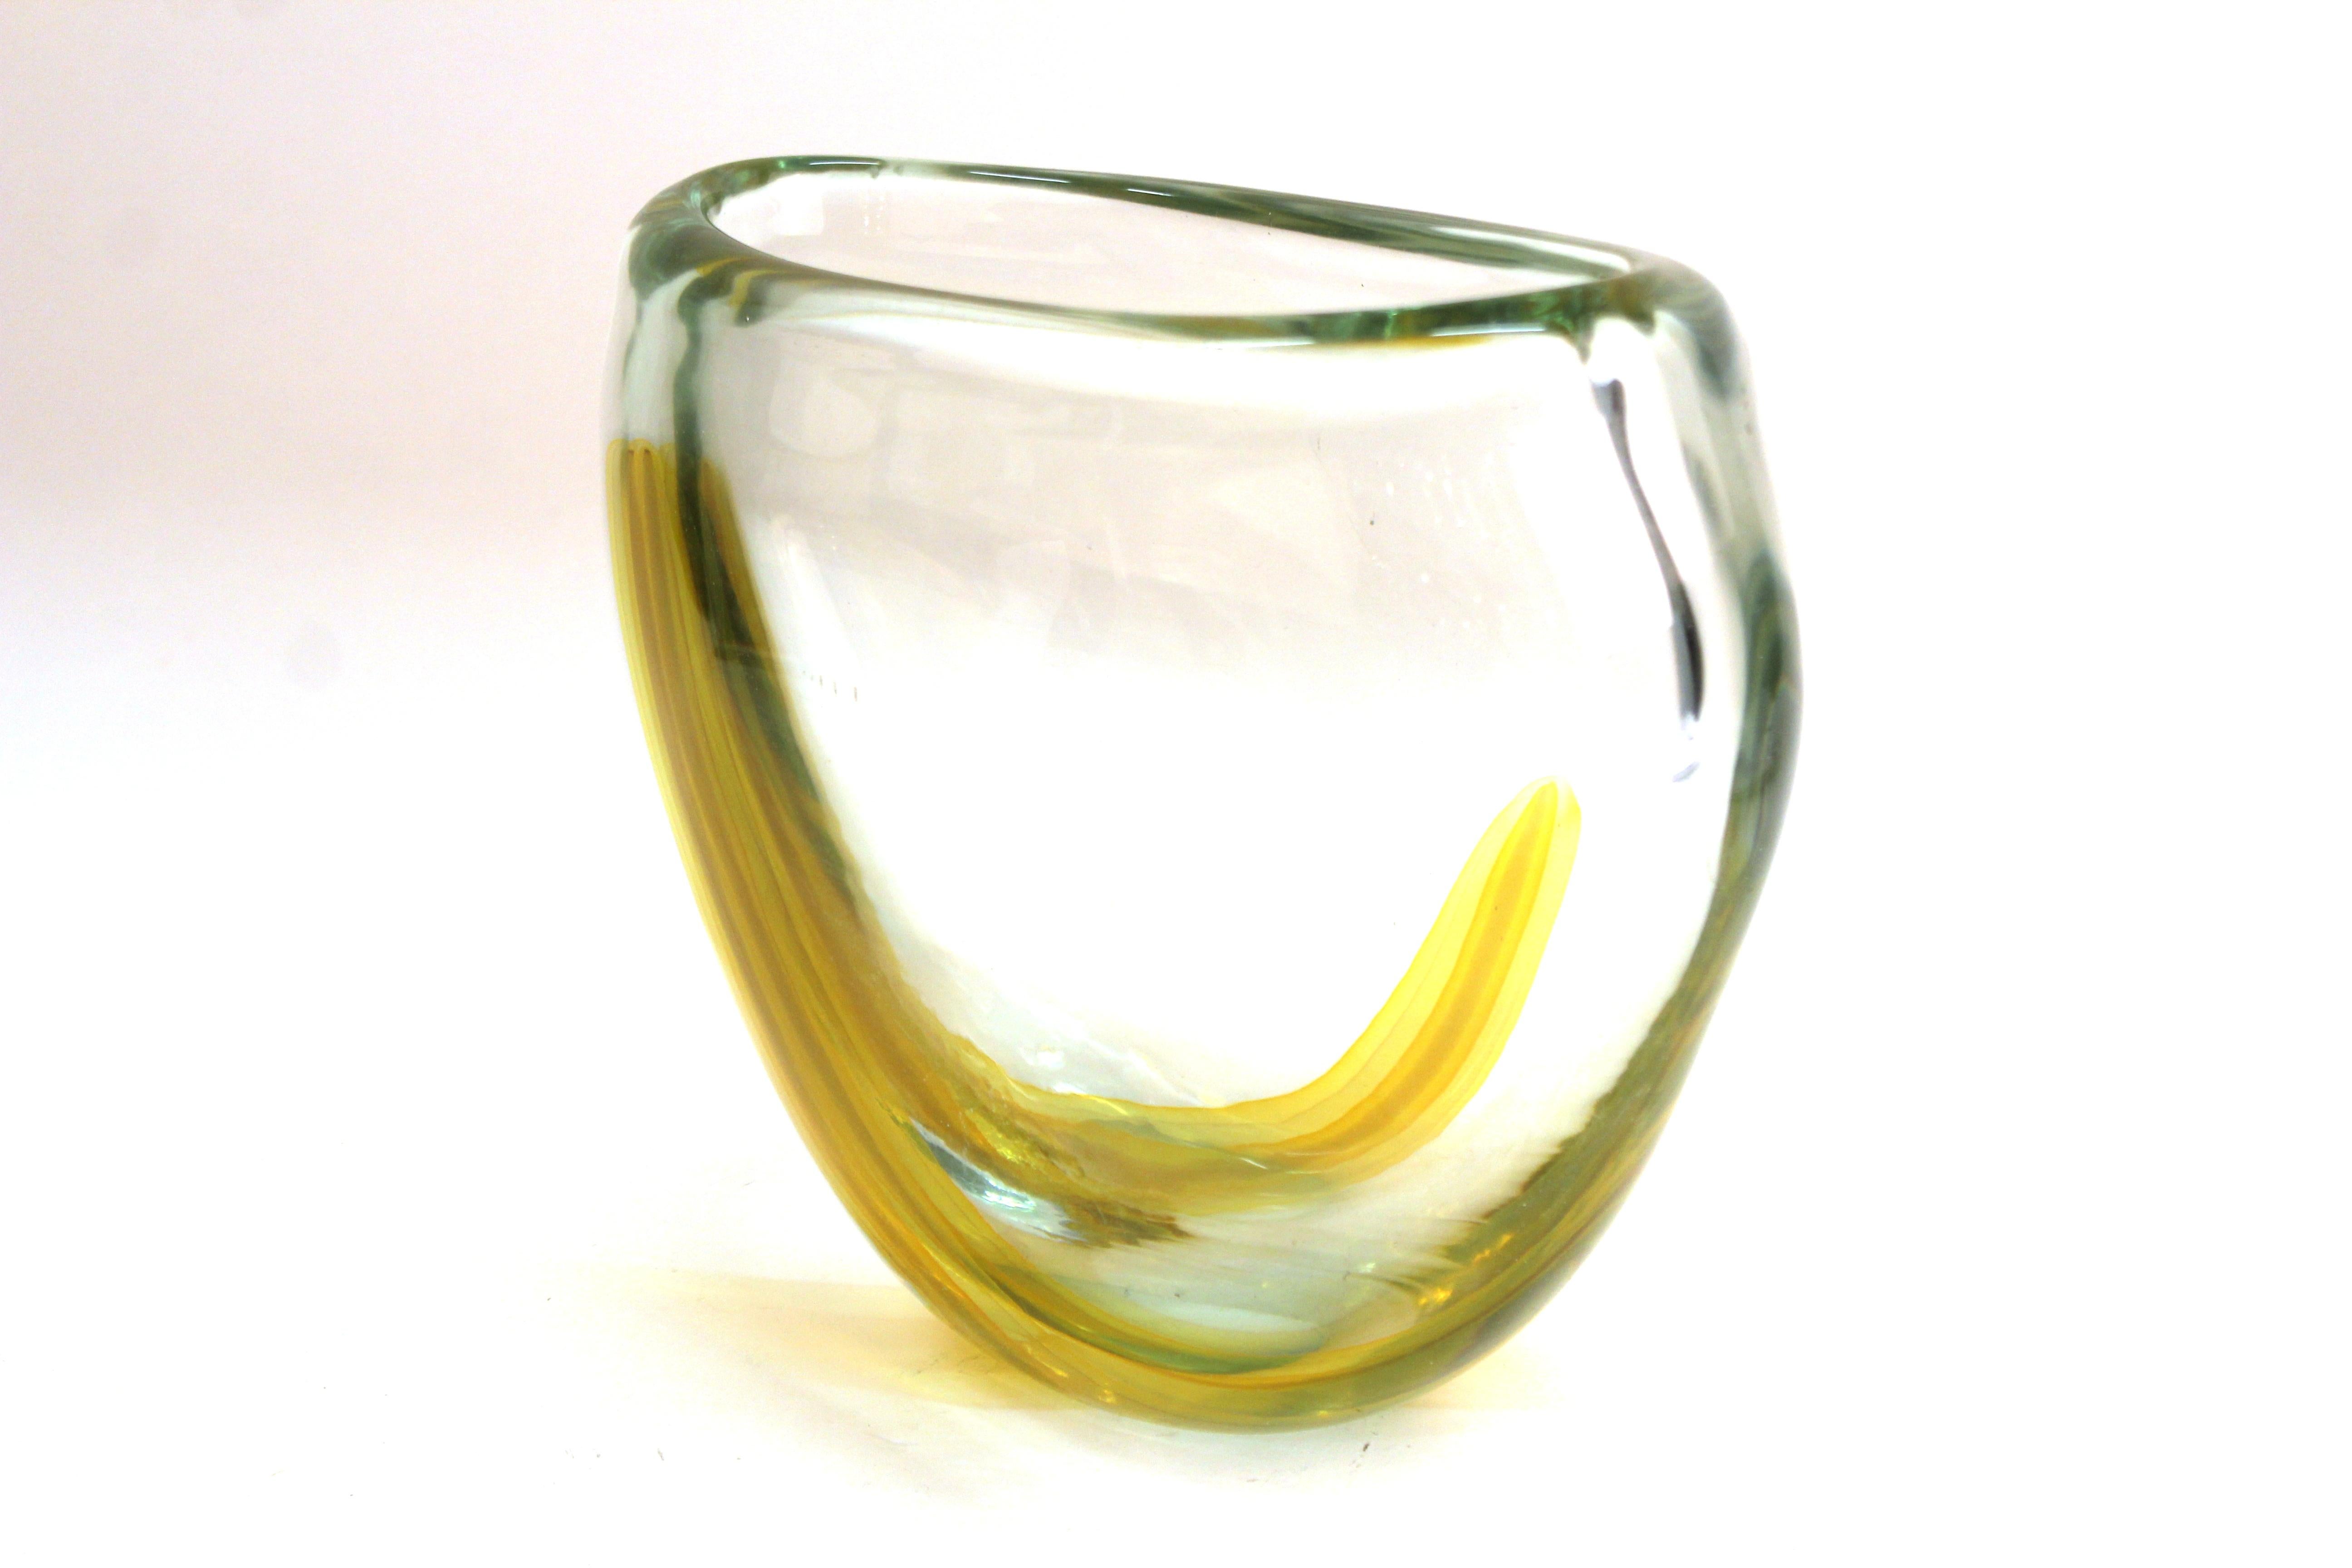 20th Century Italian Modern Murano Art Glass Vase with Yellow Strip